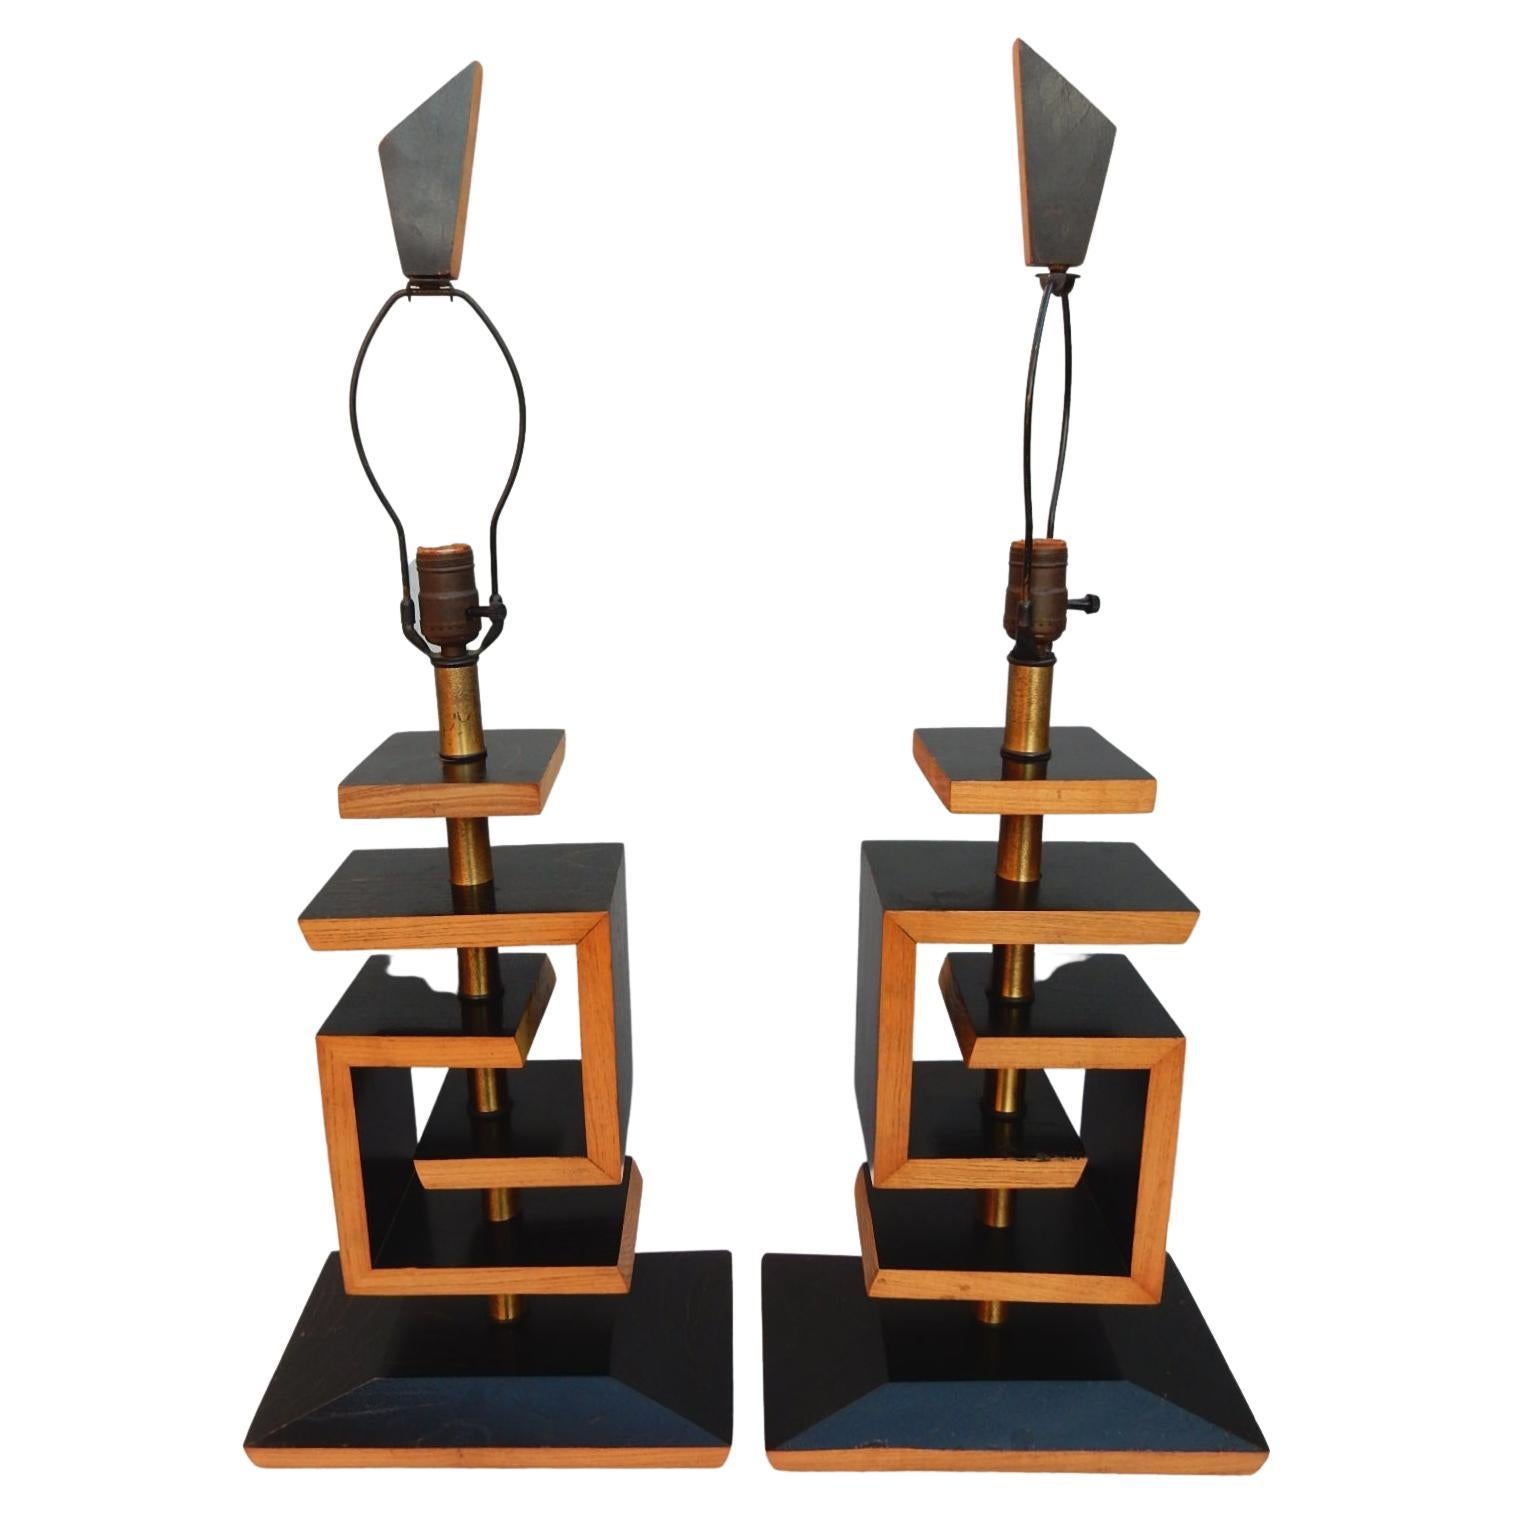 Une paire spectaculaire de lampes de table géométriques sculptées en chêne cérusé, conçues dans le style de James Mont, vers la fin des années 1940.
Couleur bicolore ébène et naturel. 
Les abat-jour d'origine en tissu deux tons et les embouts sont